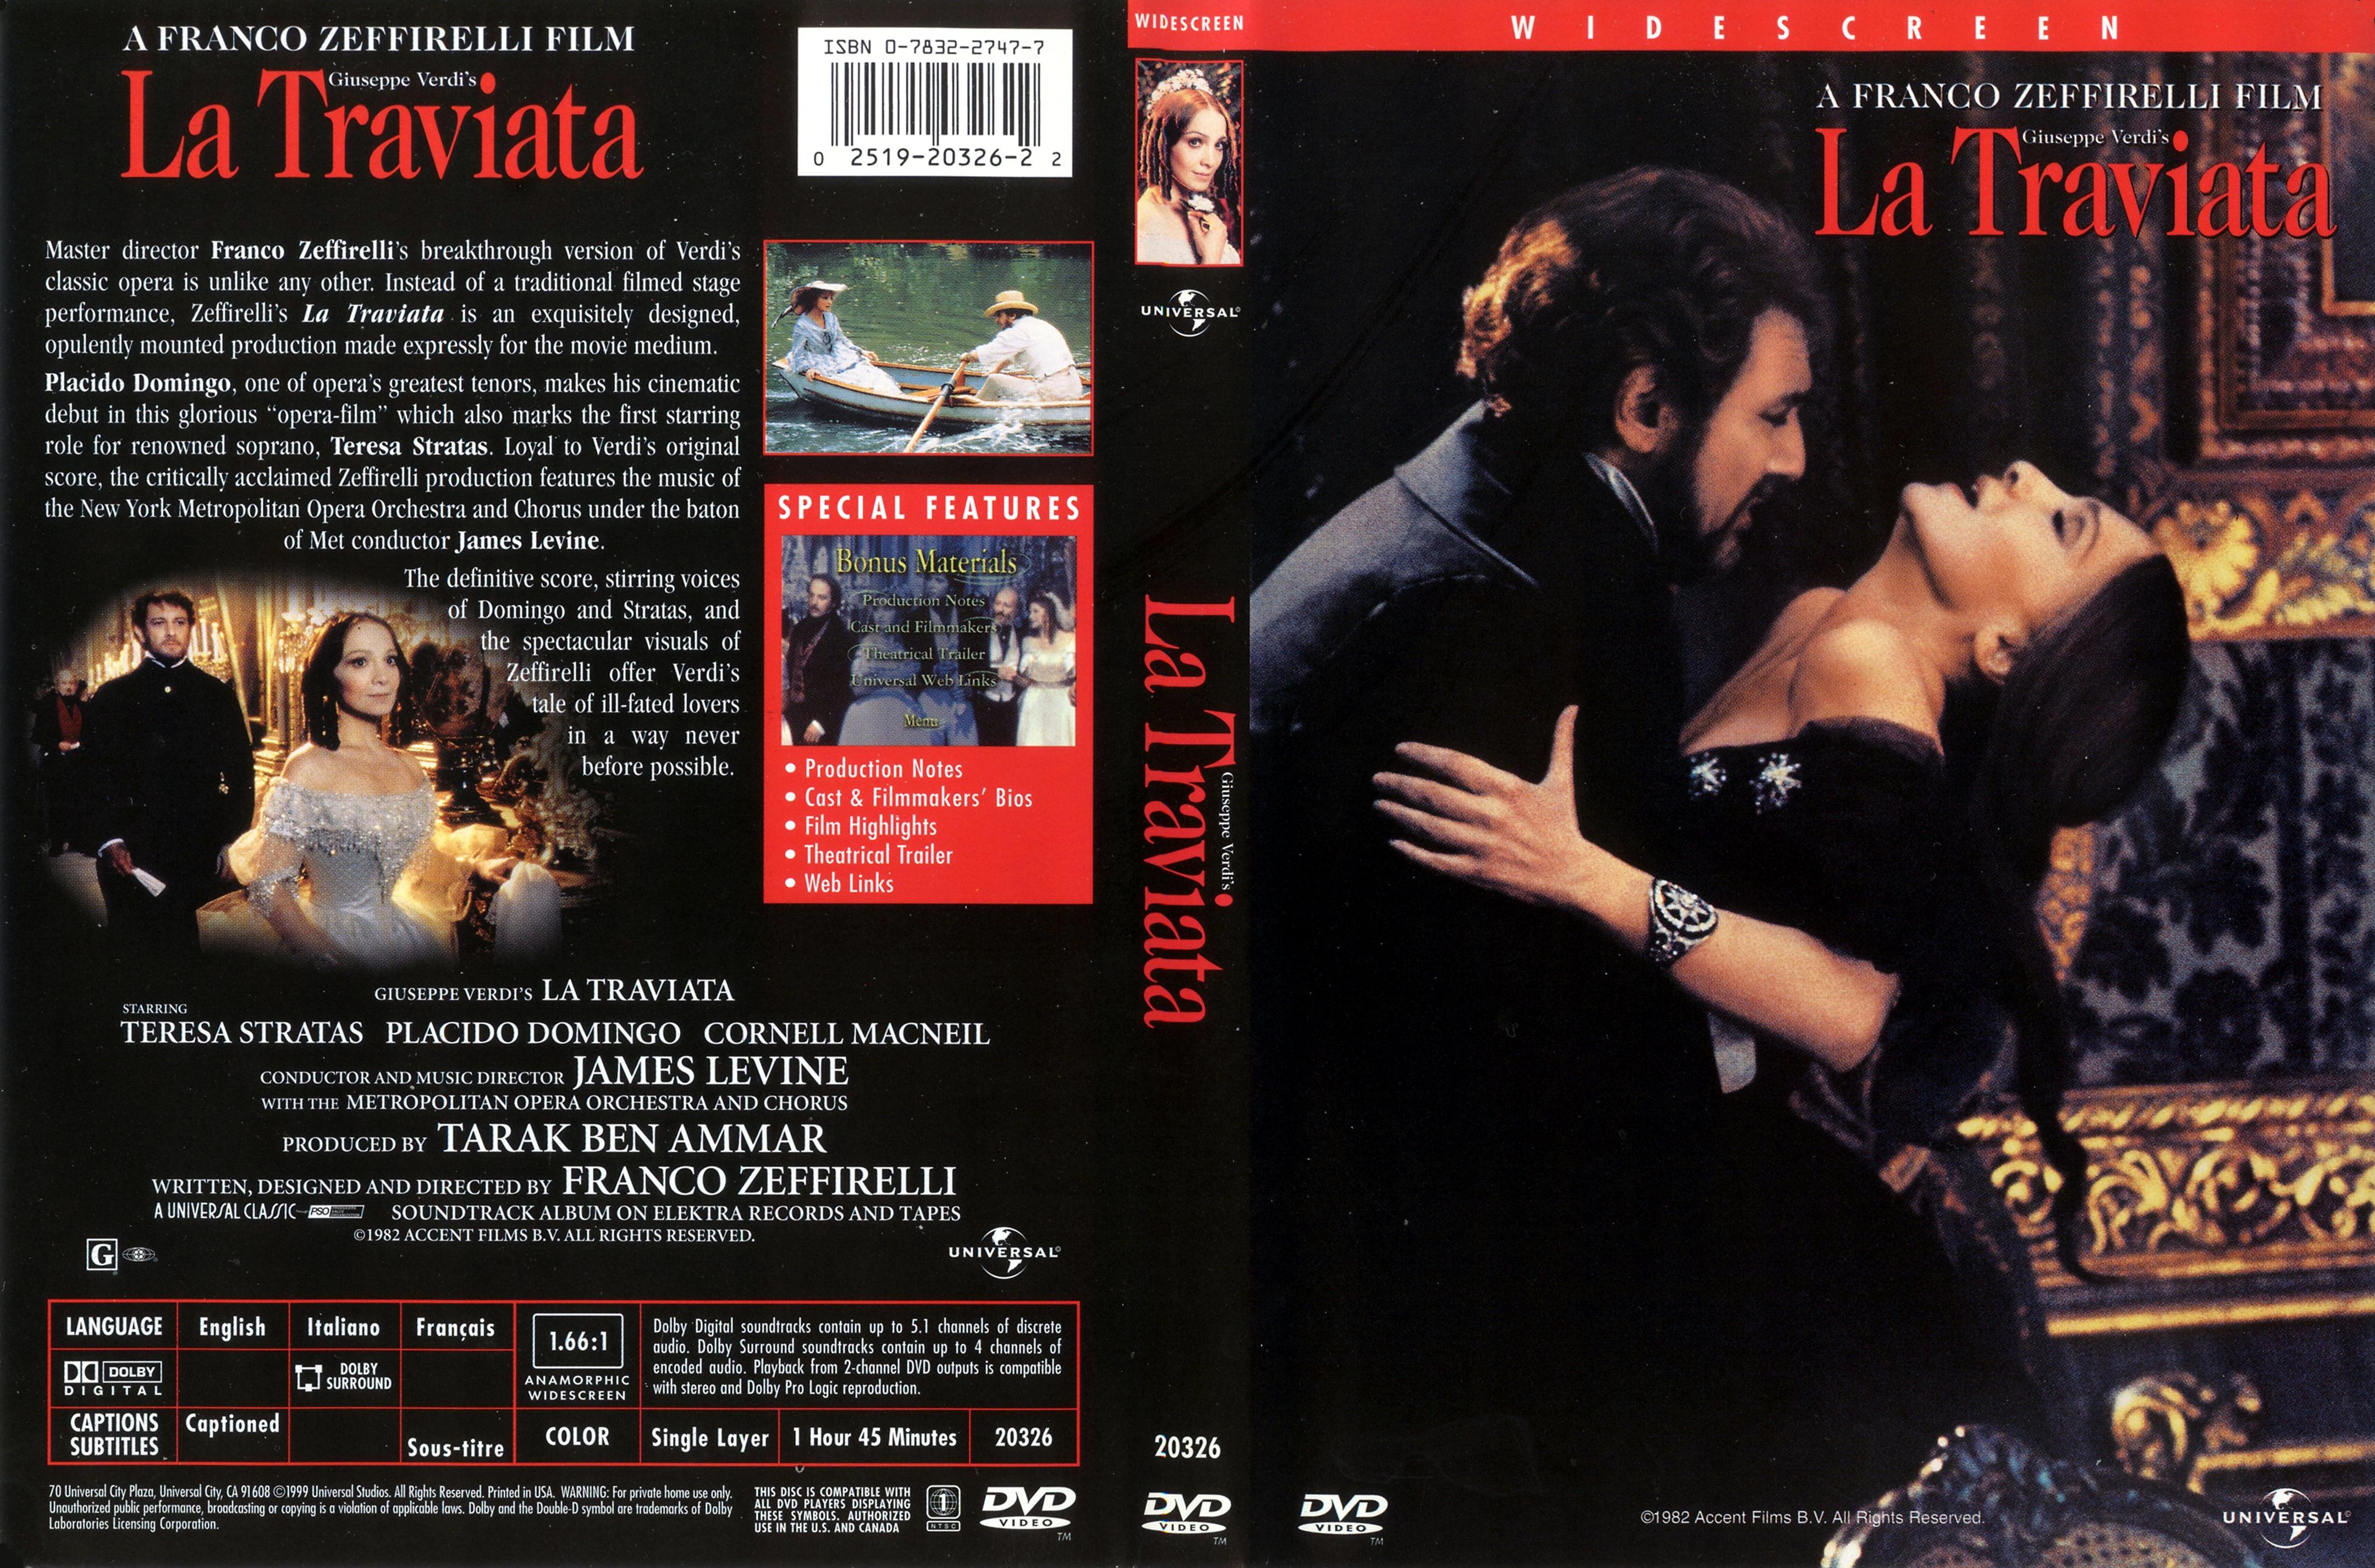 Jaquette DVD La traviata (Franco Zeffirelli)  Zone 1